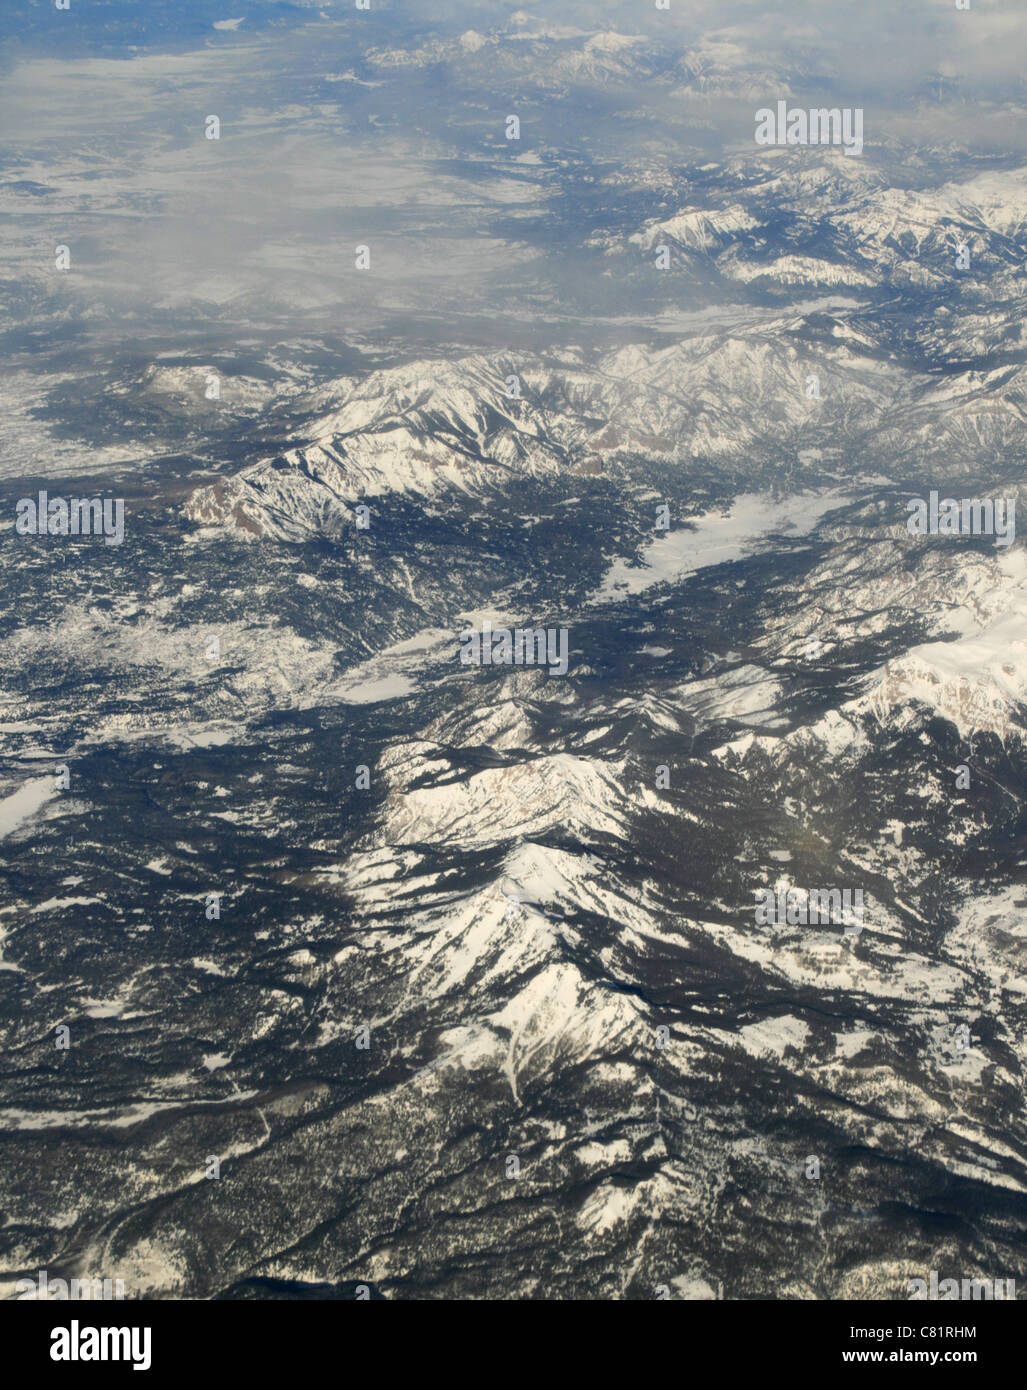 Photographie aérienne des montagnes rocheuses dans l'hiver avec des sommets enneigés et des vallées Banque D'Images